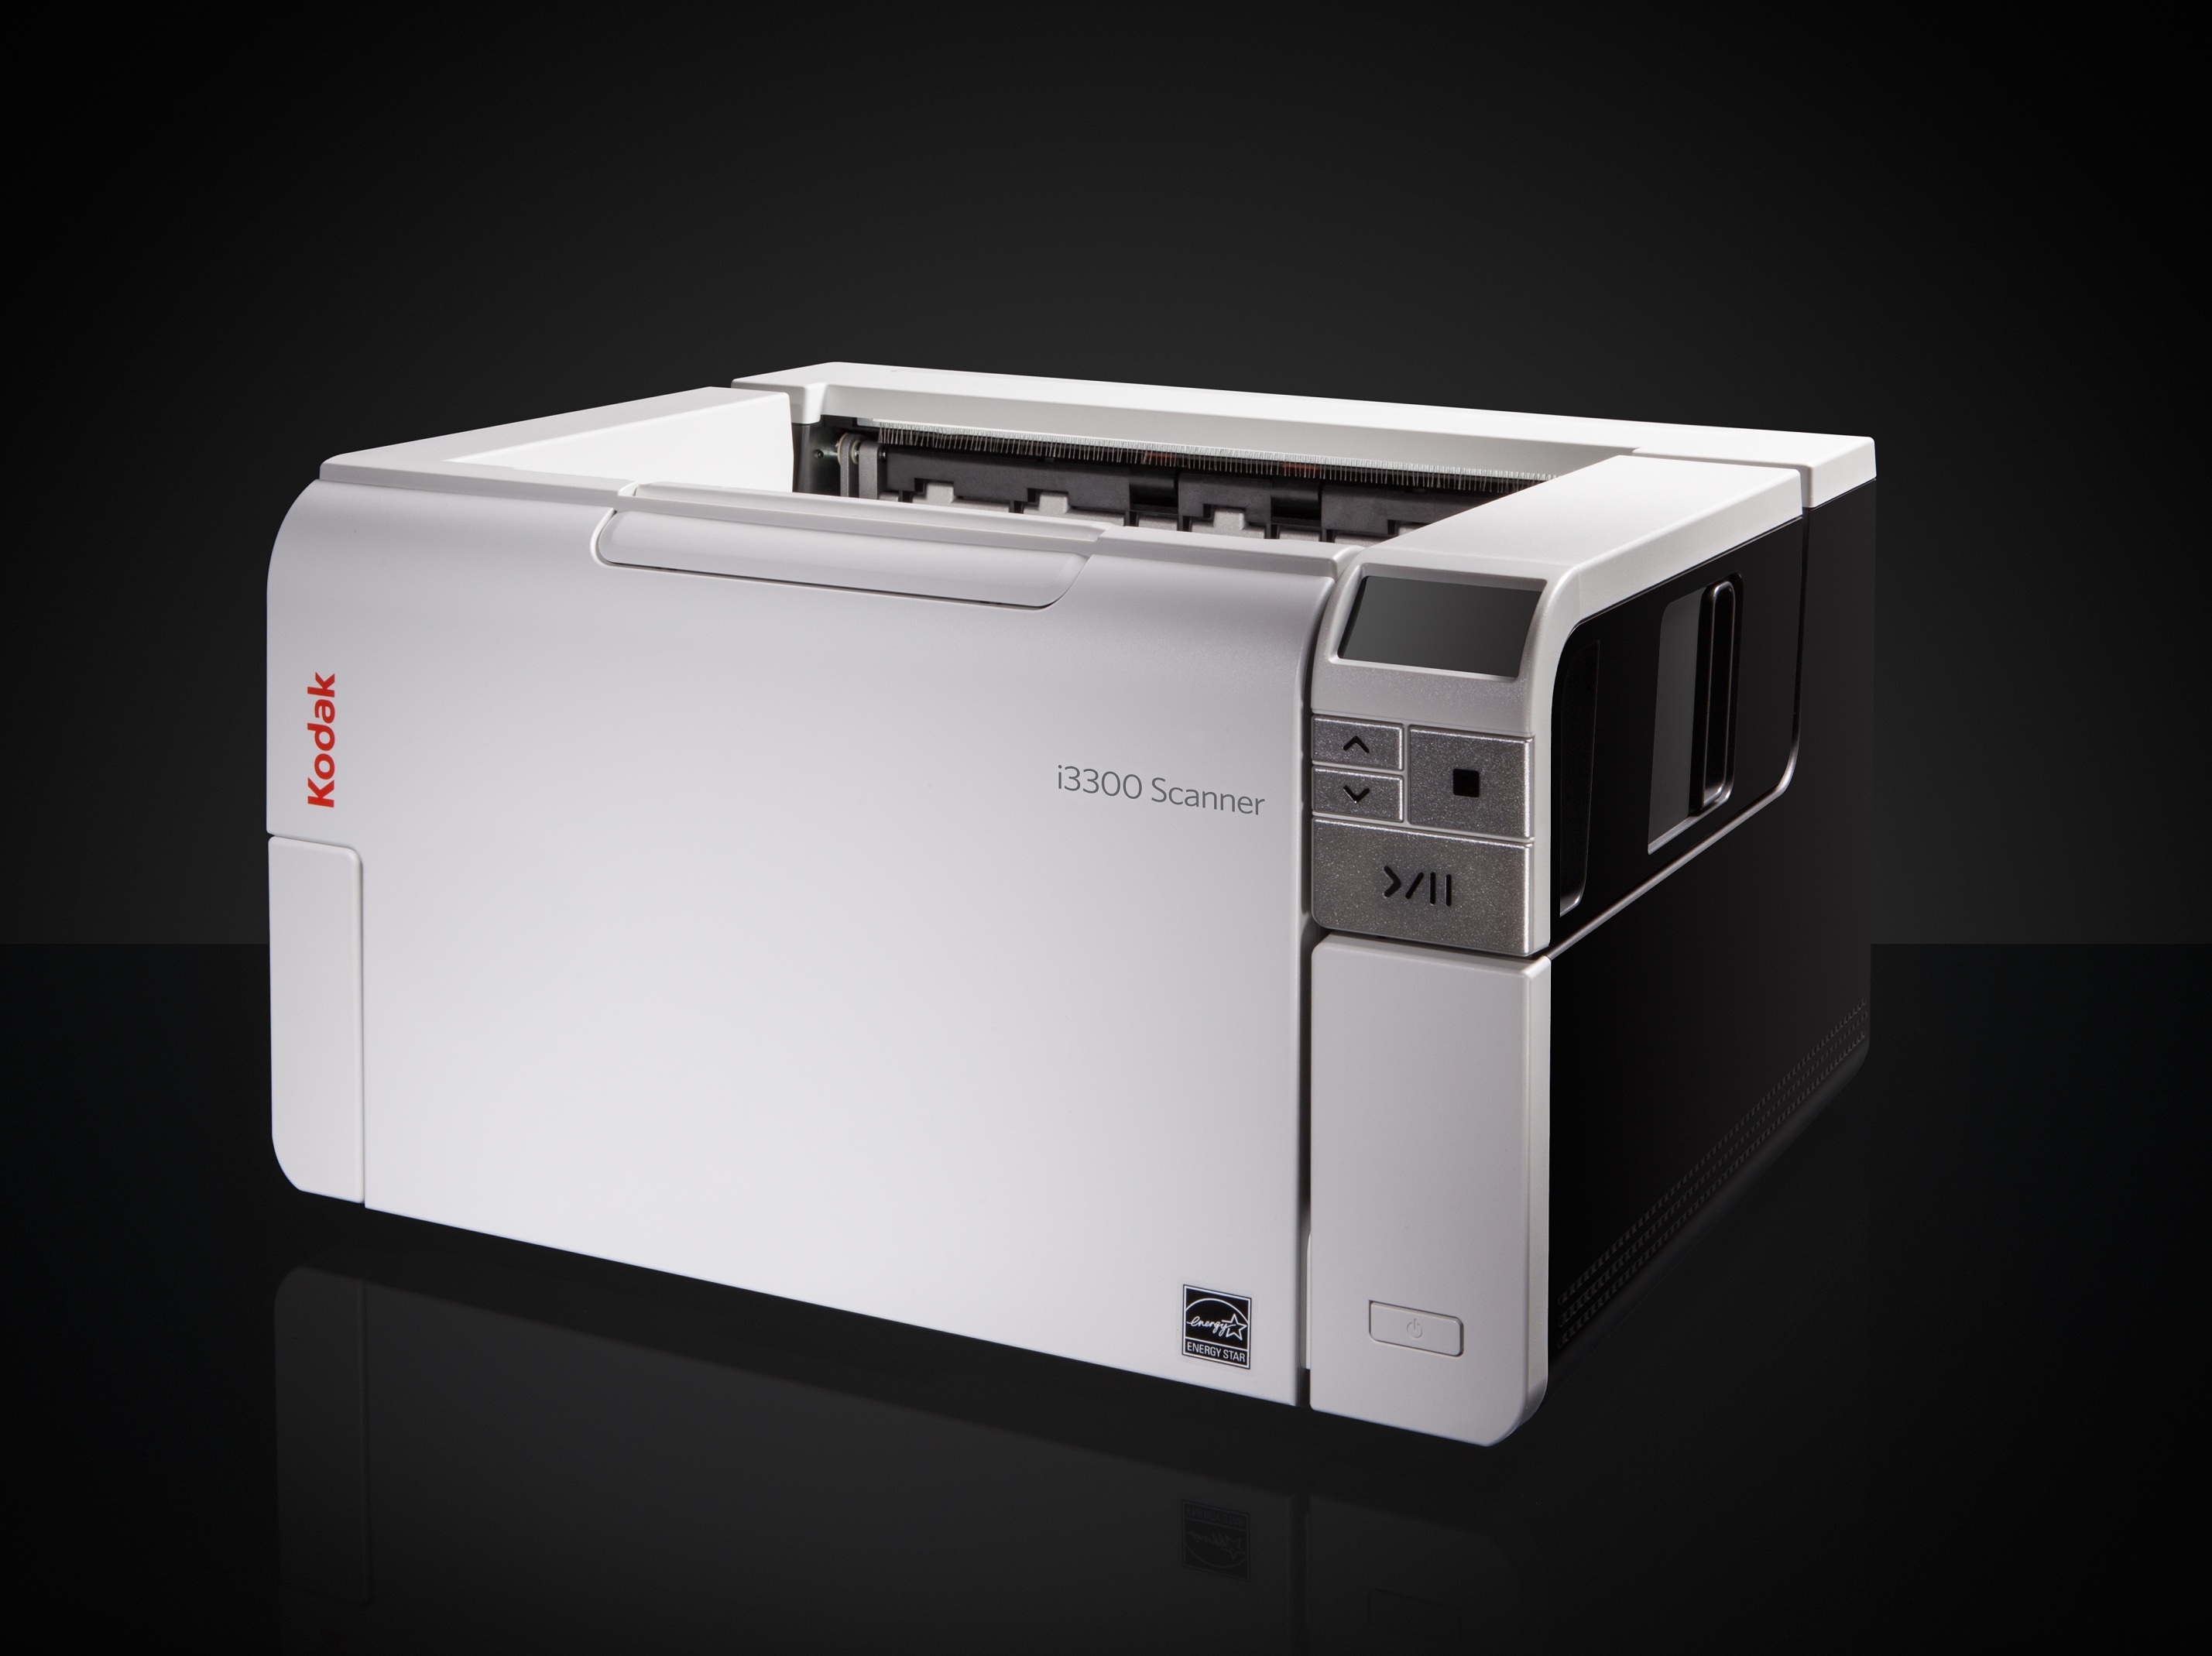 Kodak Alaris expands scanner portfolio